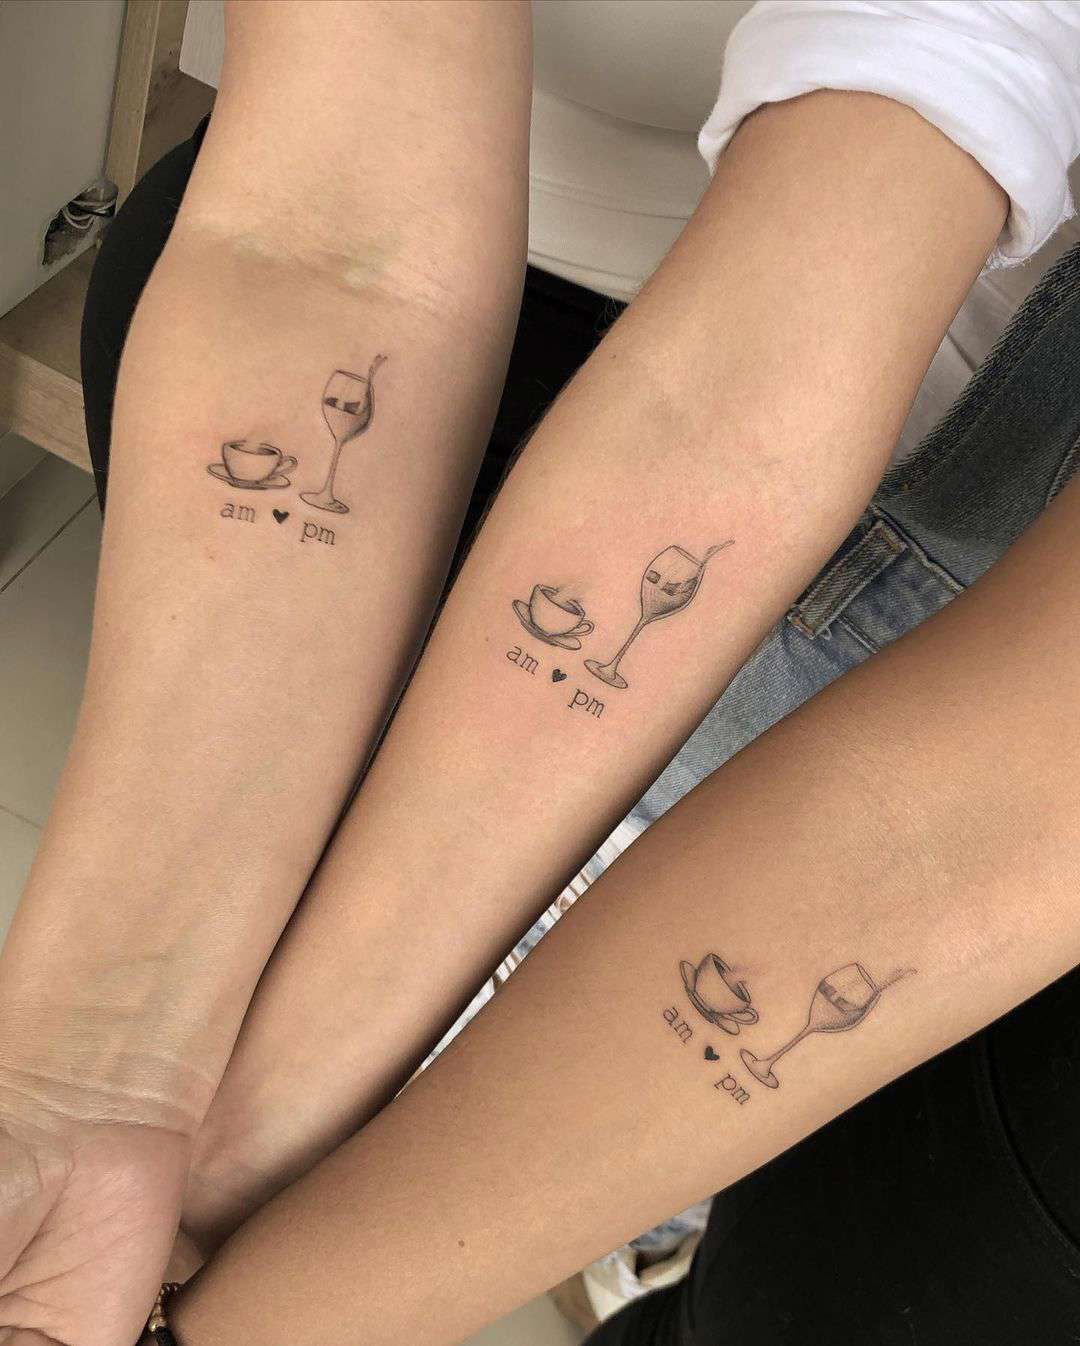 Tatuajes minimalistas para amigas: ideas bonitas y llenas de significado